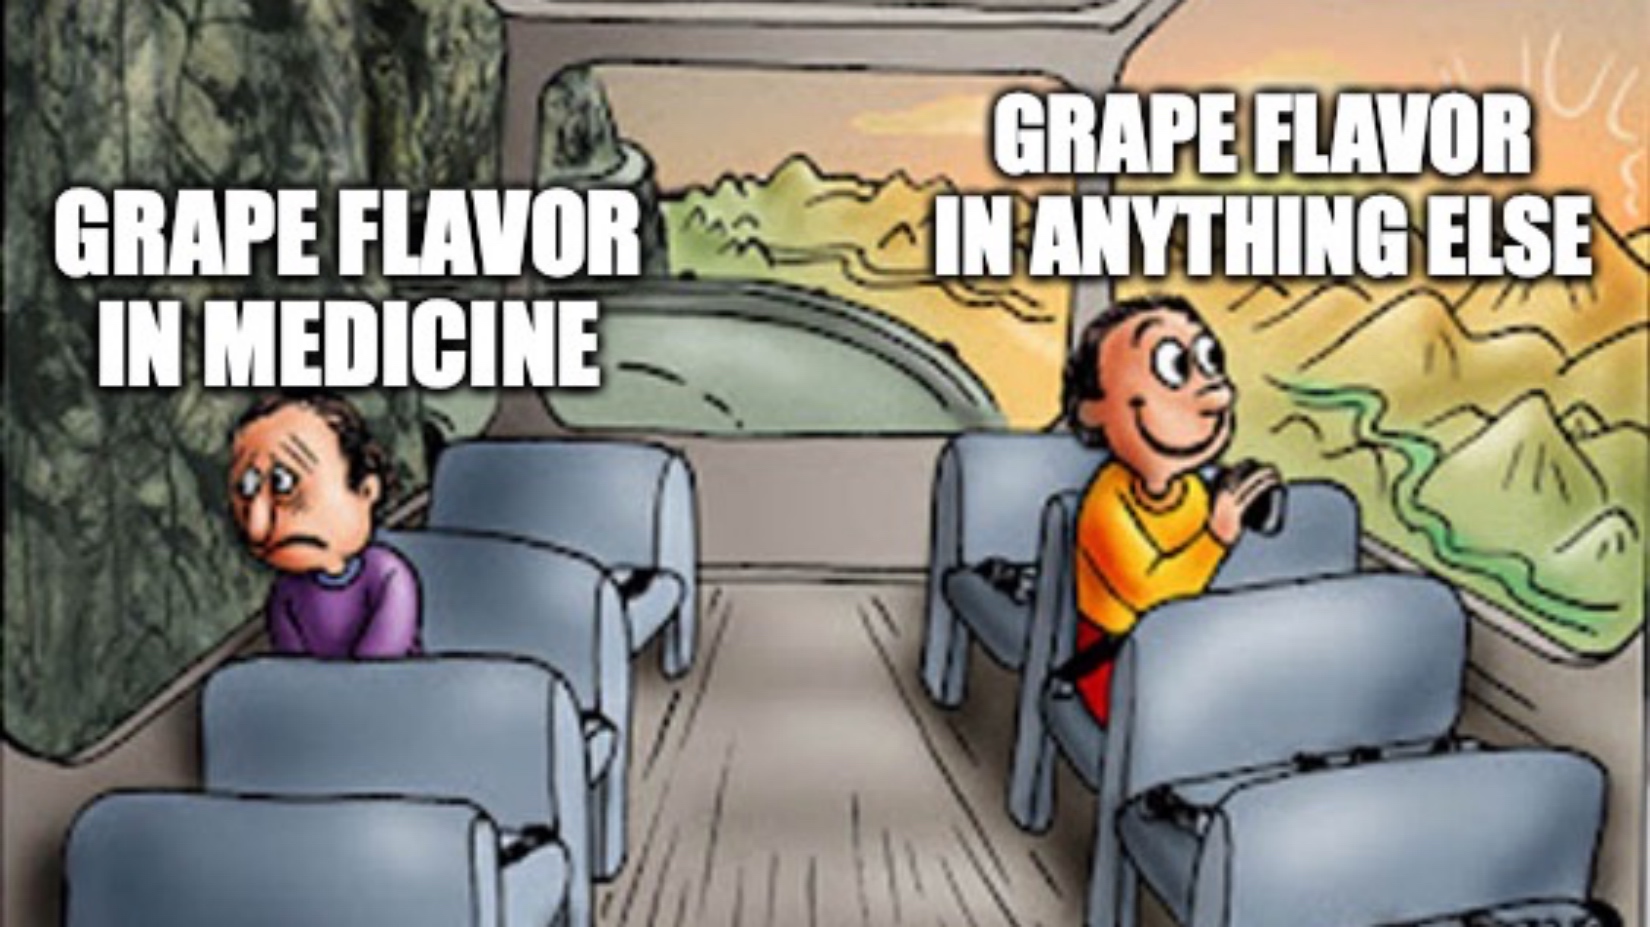 meme about grape flavors